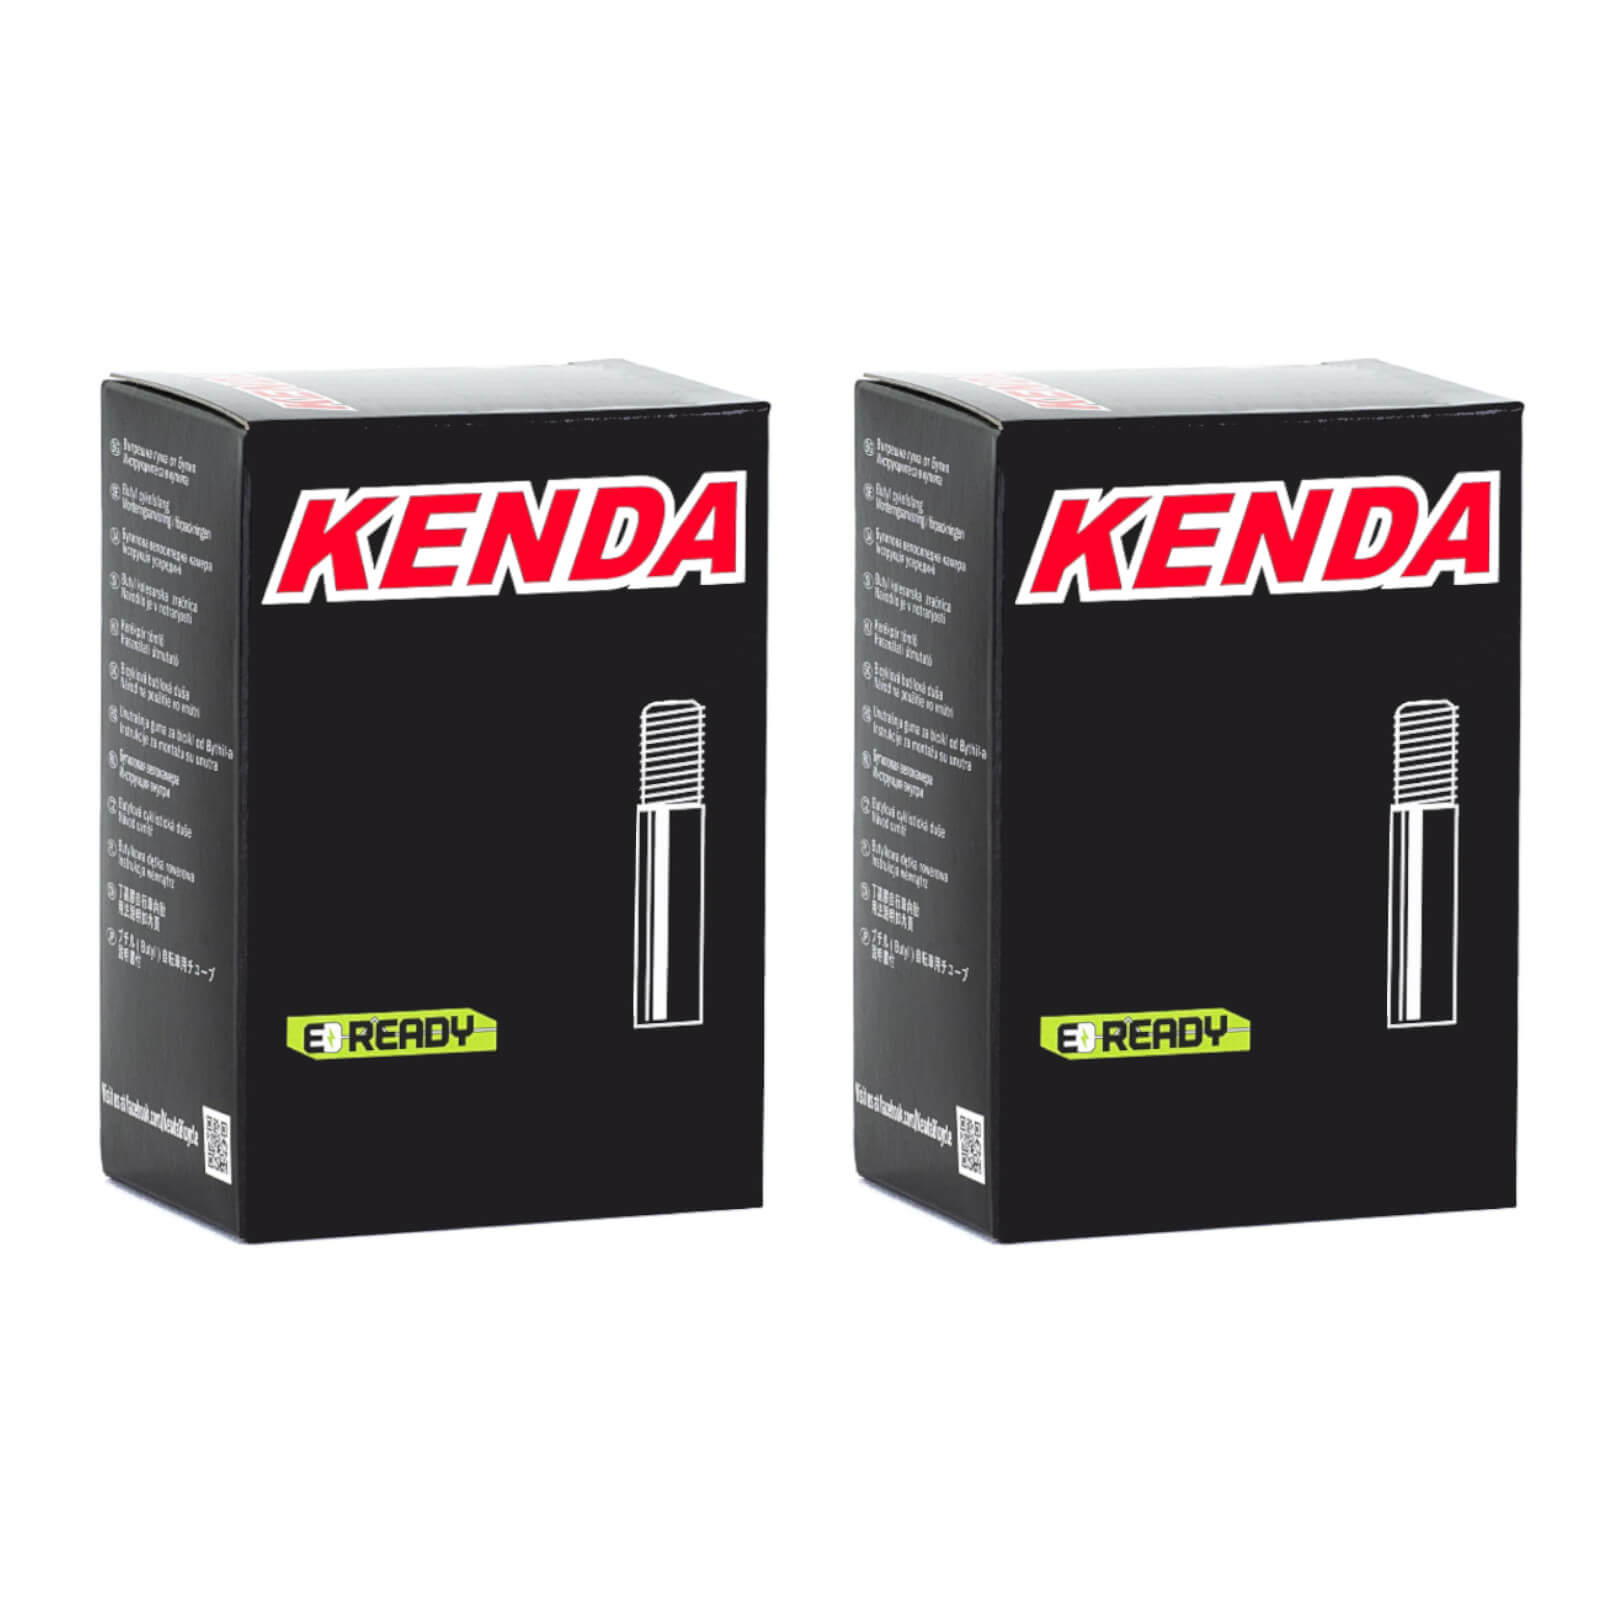 Kenda 20x2.8-3.0" 20 Inch Schrader Valve Bike Inner Tube Pack of 2